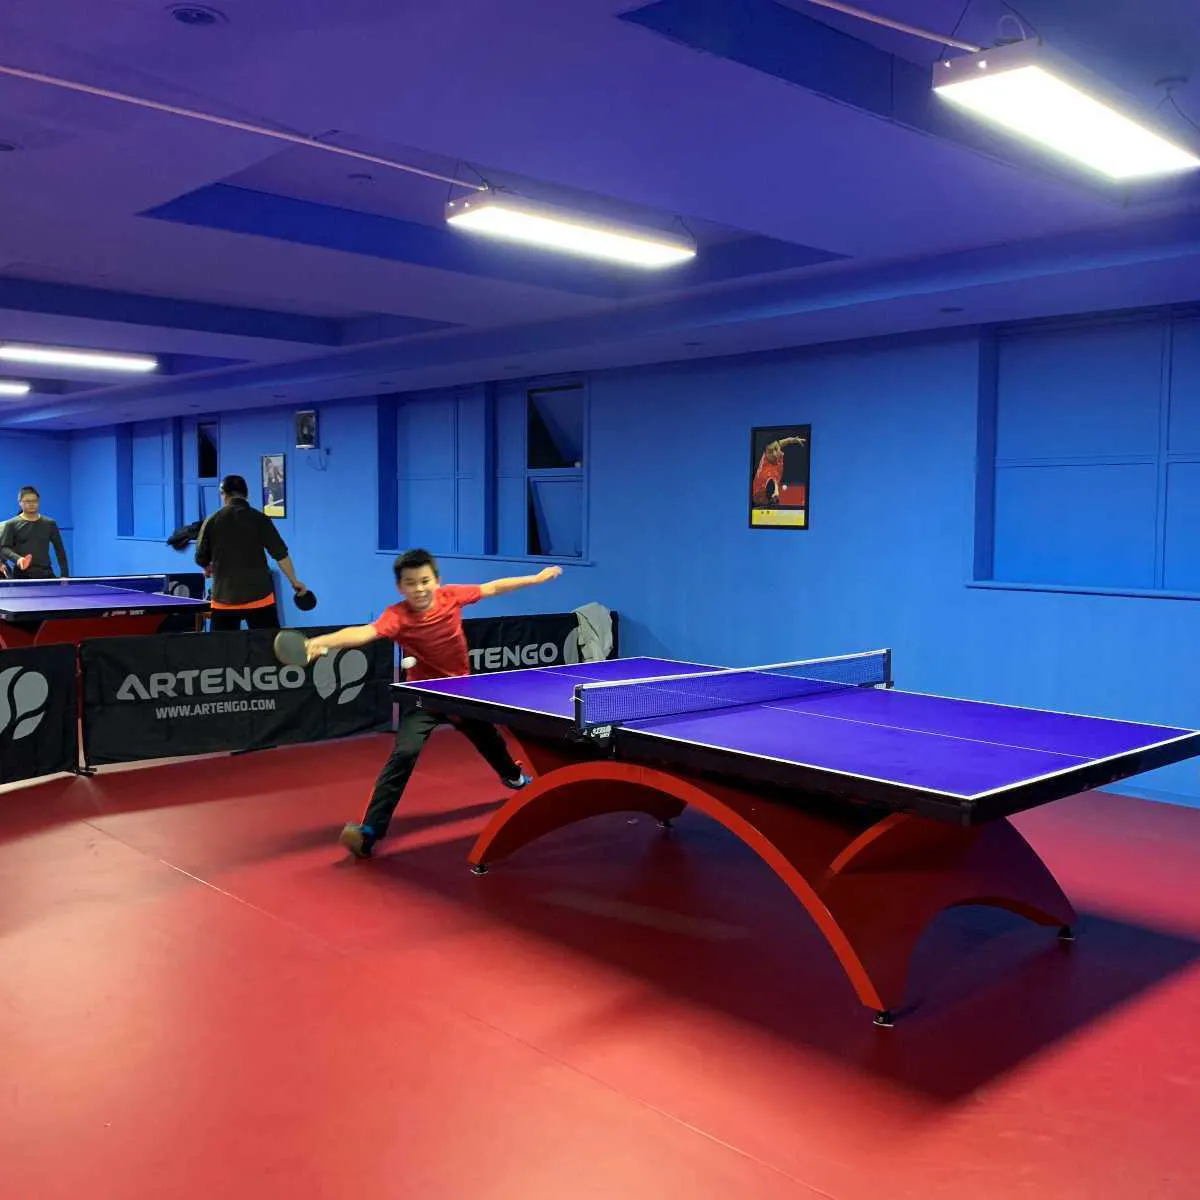 Grand plancher de court de tennis de table, plancher de sport en pvc, cour de tennis de table intérieure standard international